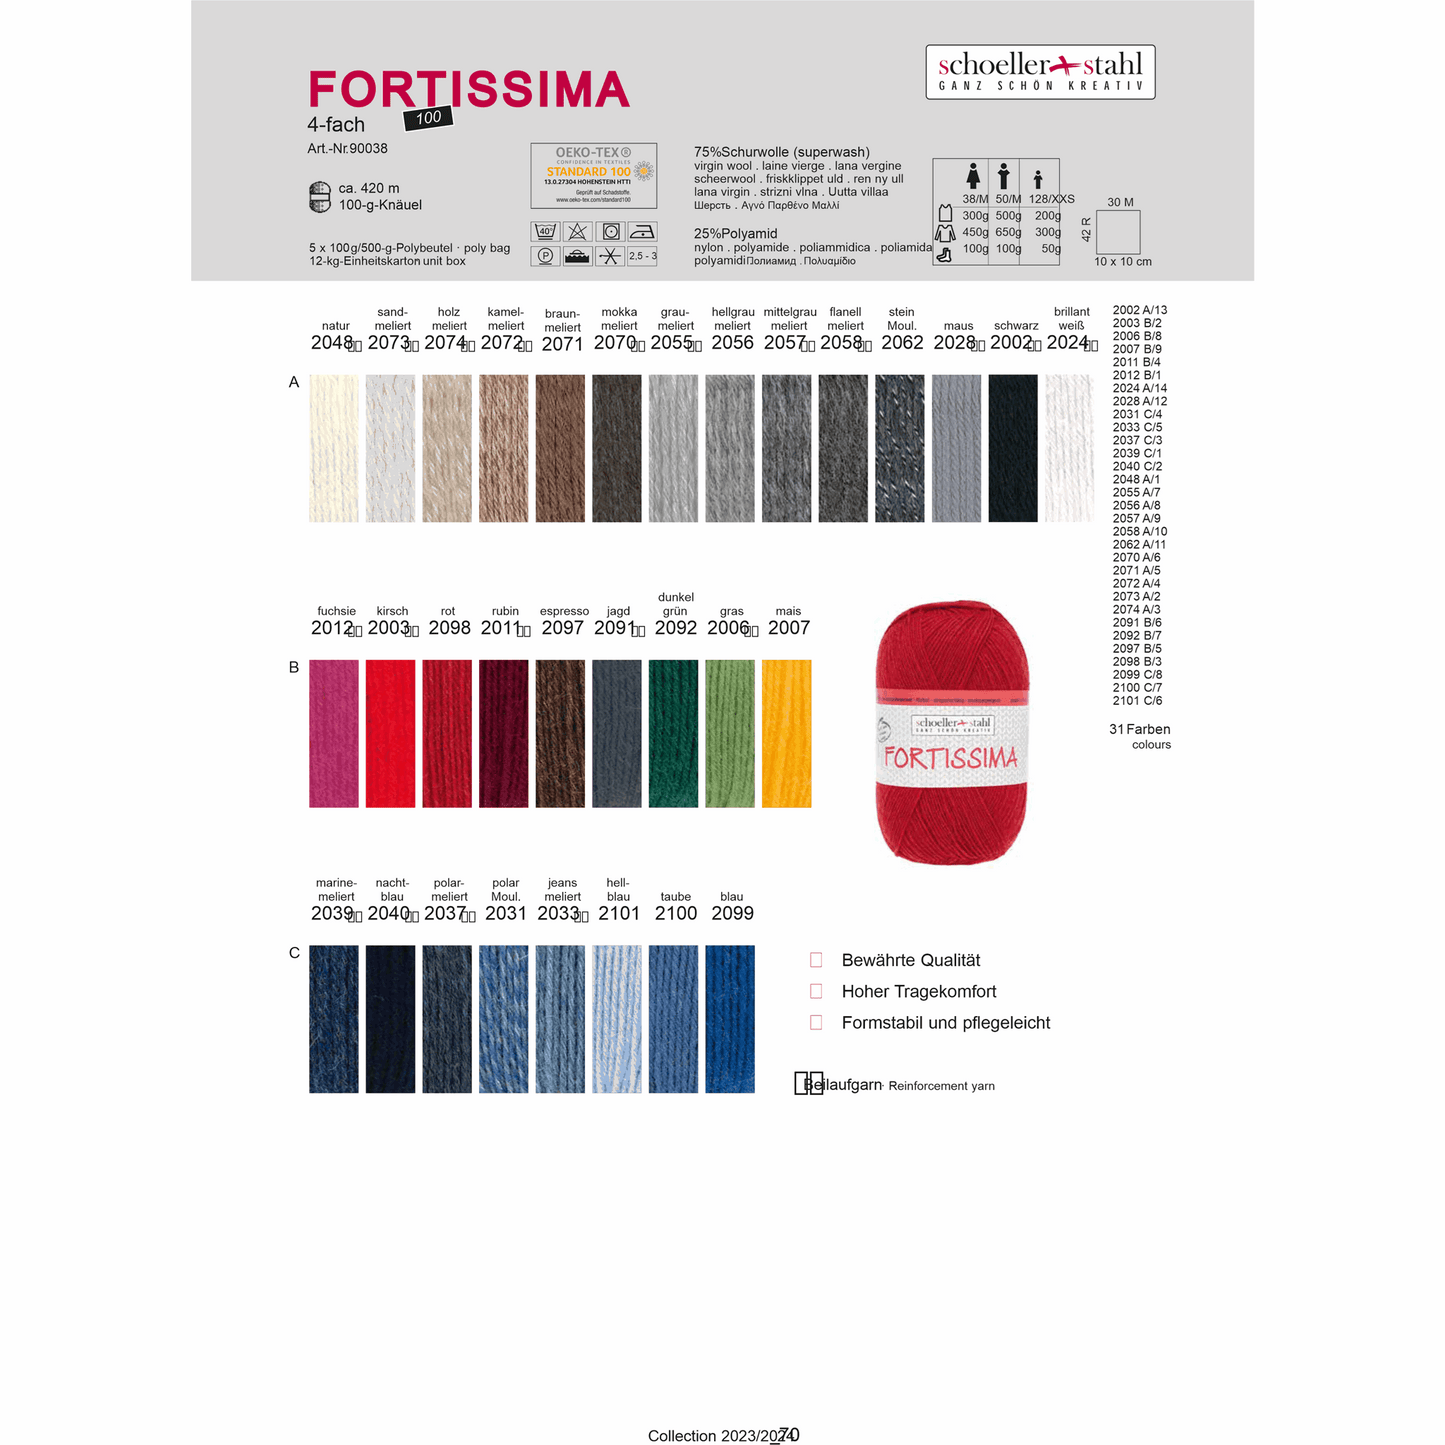 Fortissima socka 100, 90038, Farbe 2072, kamel meliert